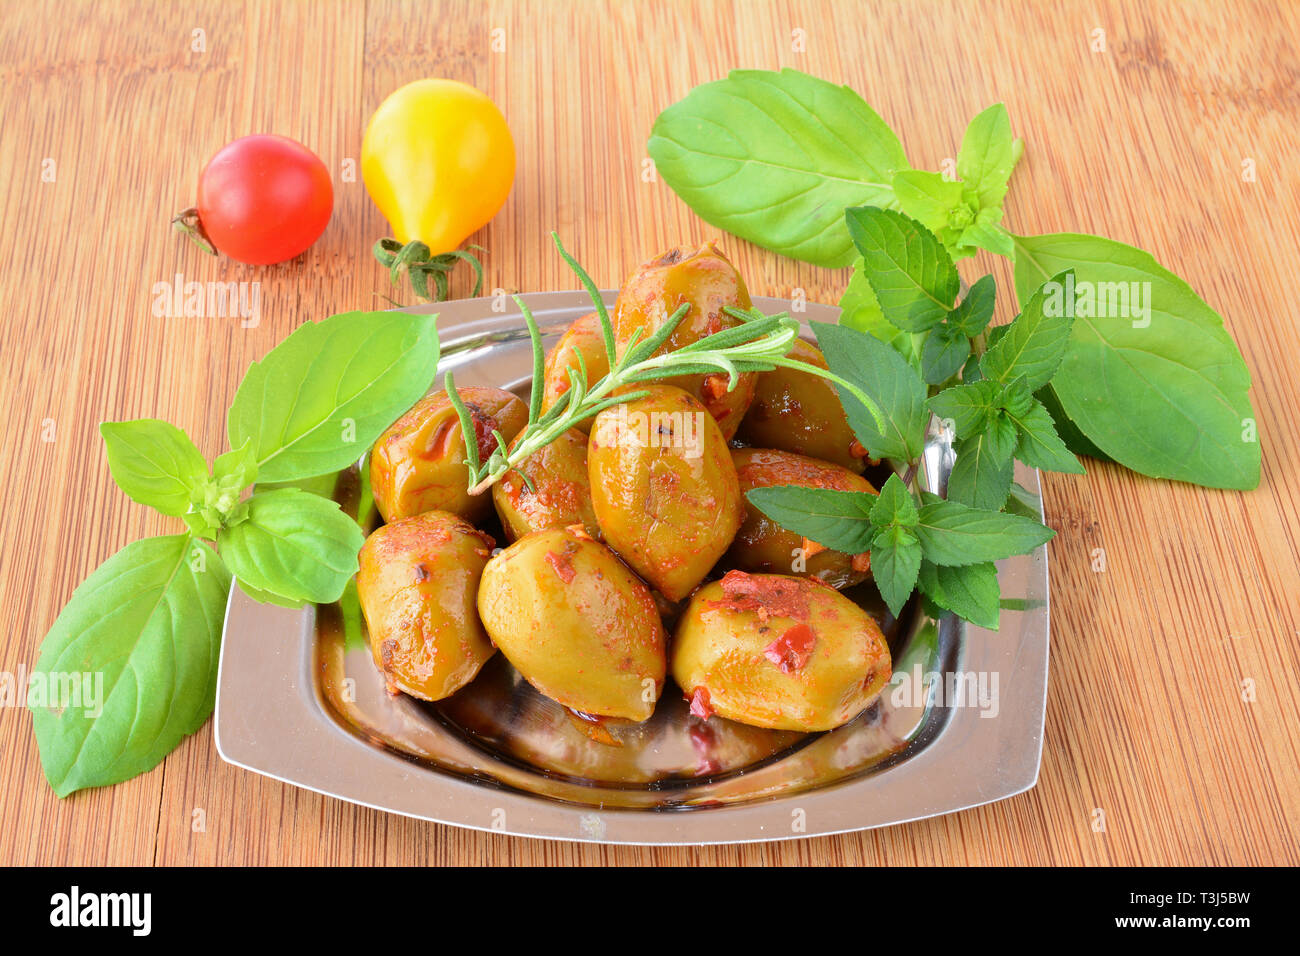 Piccante, hot olive verdi con fresche, verdi piante aromatiche e pomodoro ciliegino in piccole, metallo piattino in bambù tavolo in legno Foto Stock